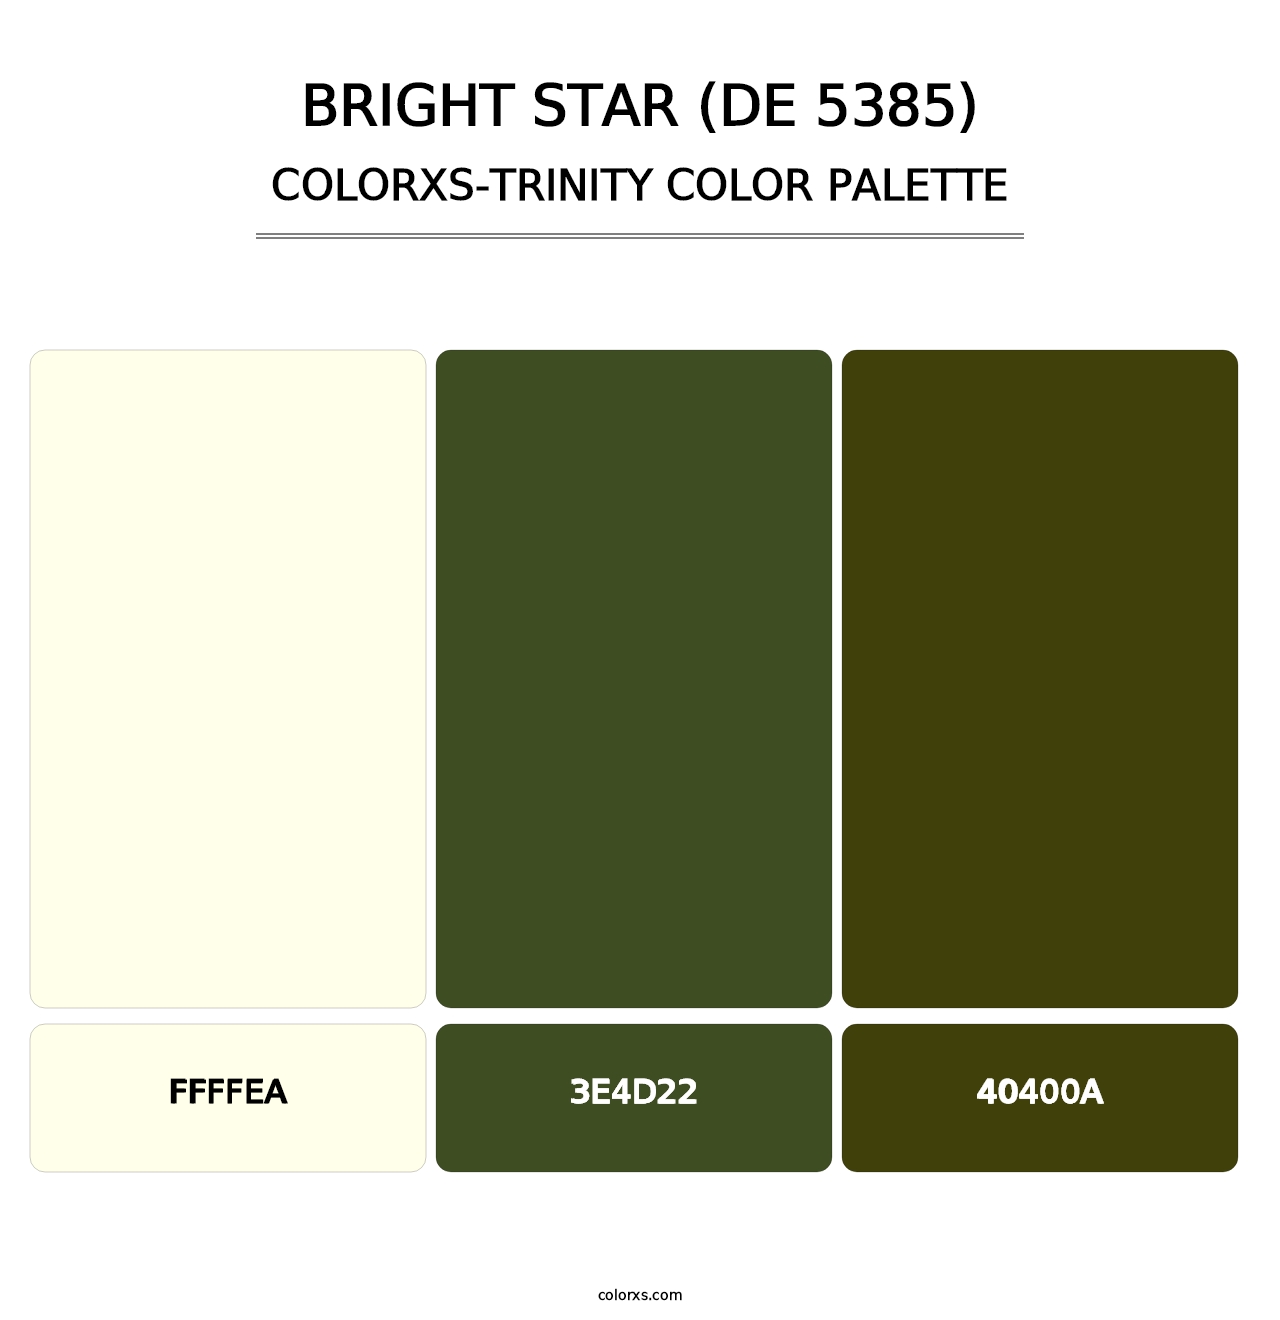 Bright Star (DE 5385) - Colorxs Trinity Palette